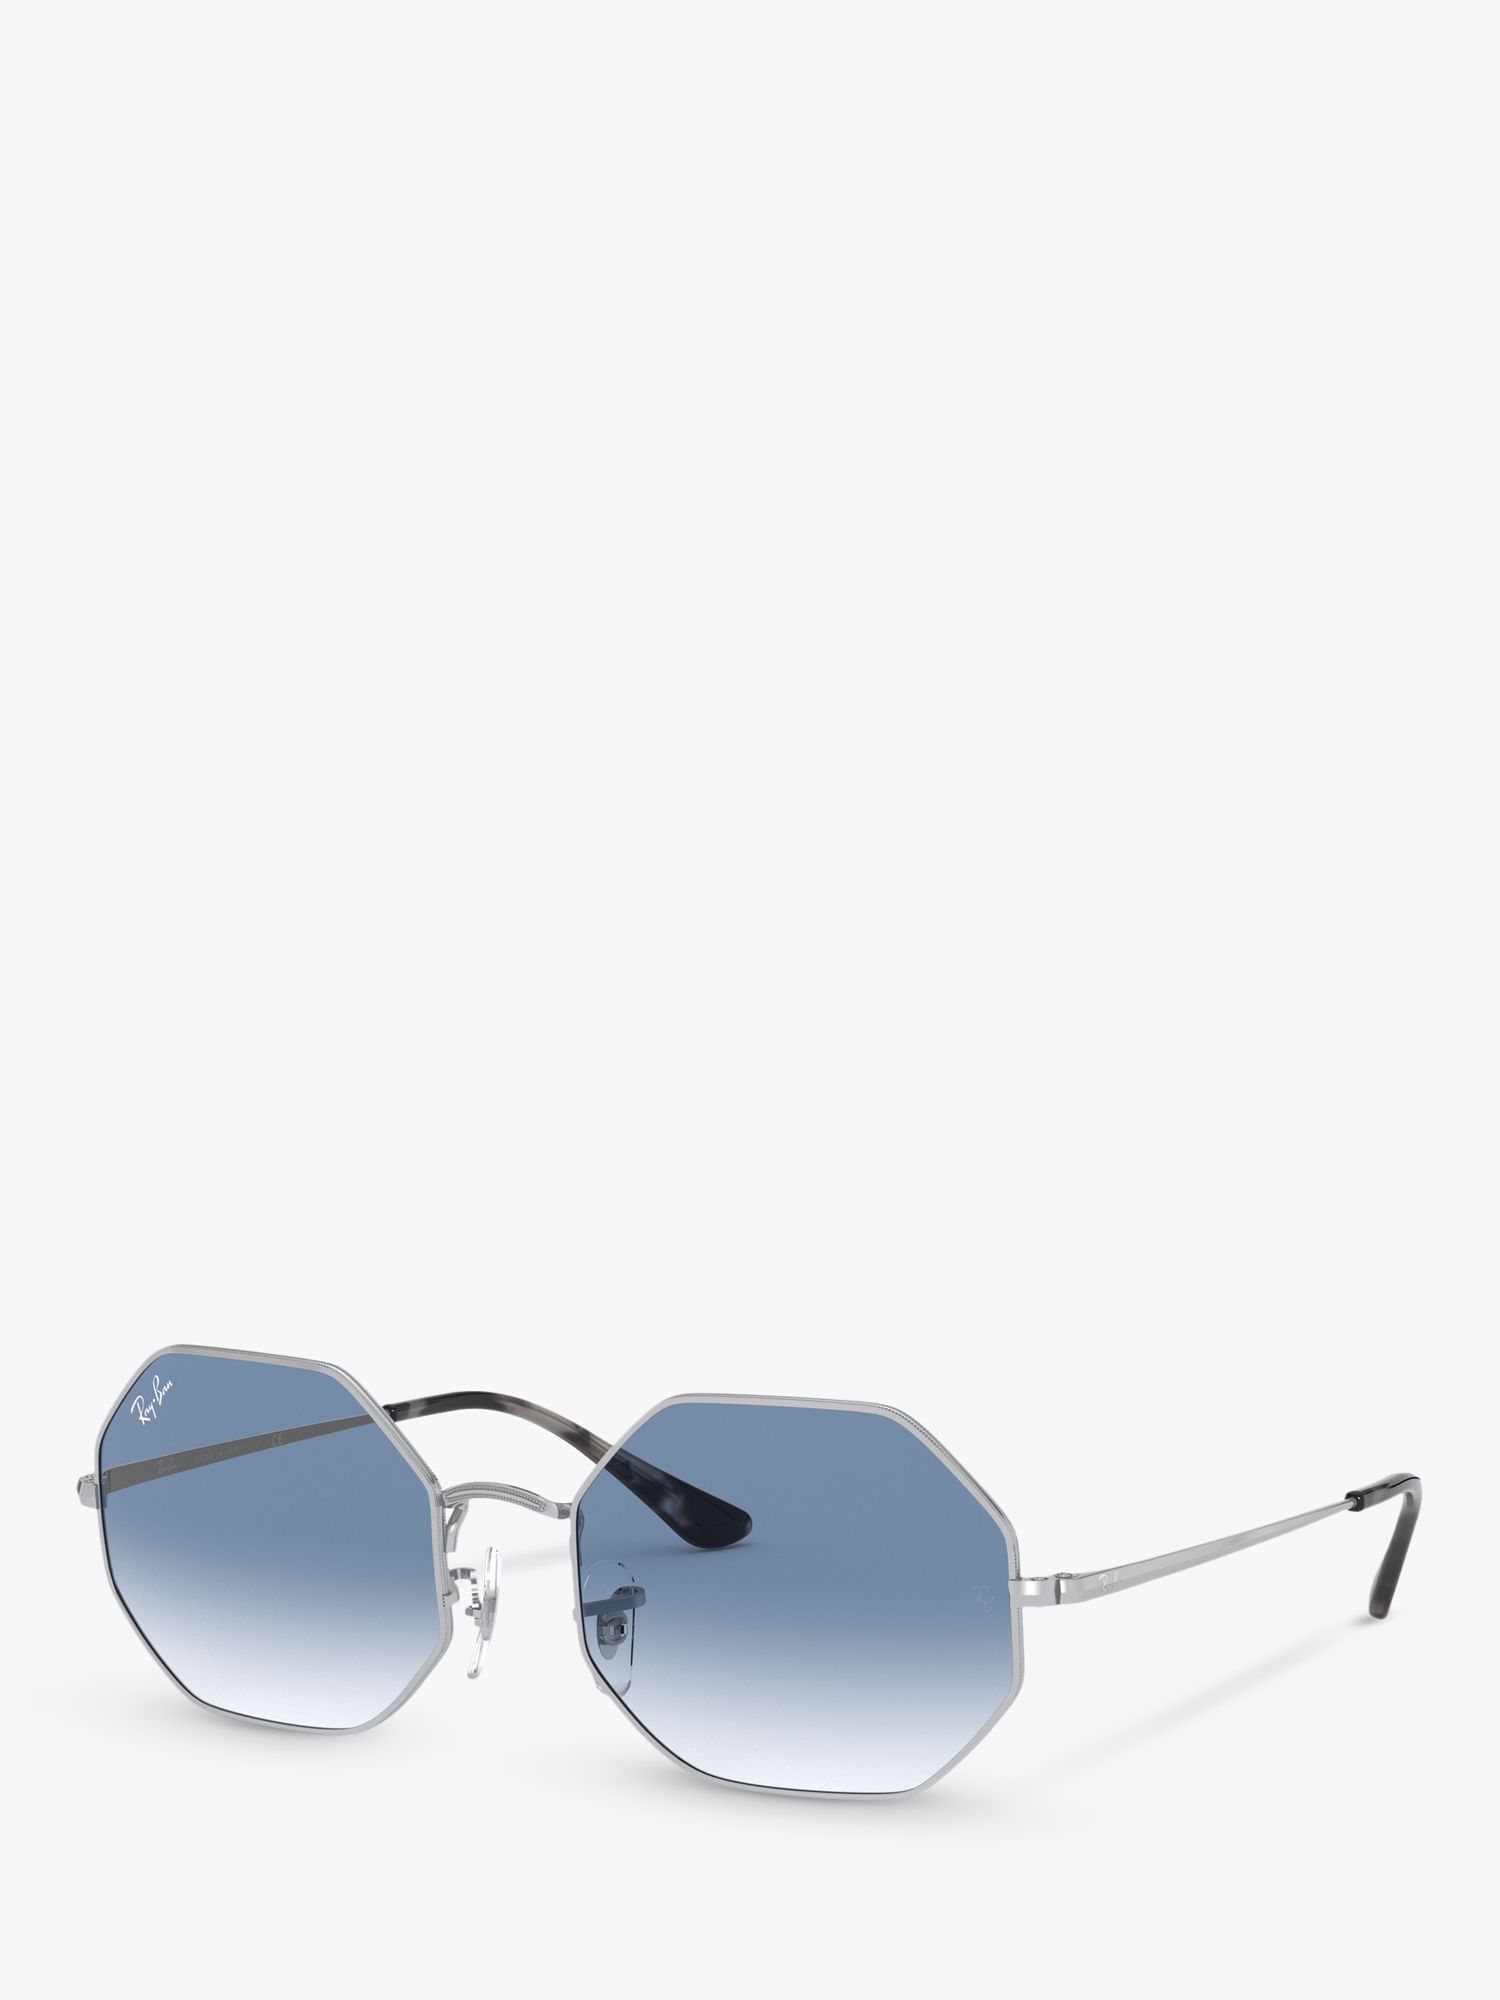 Восьмиугольные солнцезащитные очки унисекс Ray-Ban RB1972, серебристо-синий с градиентом